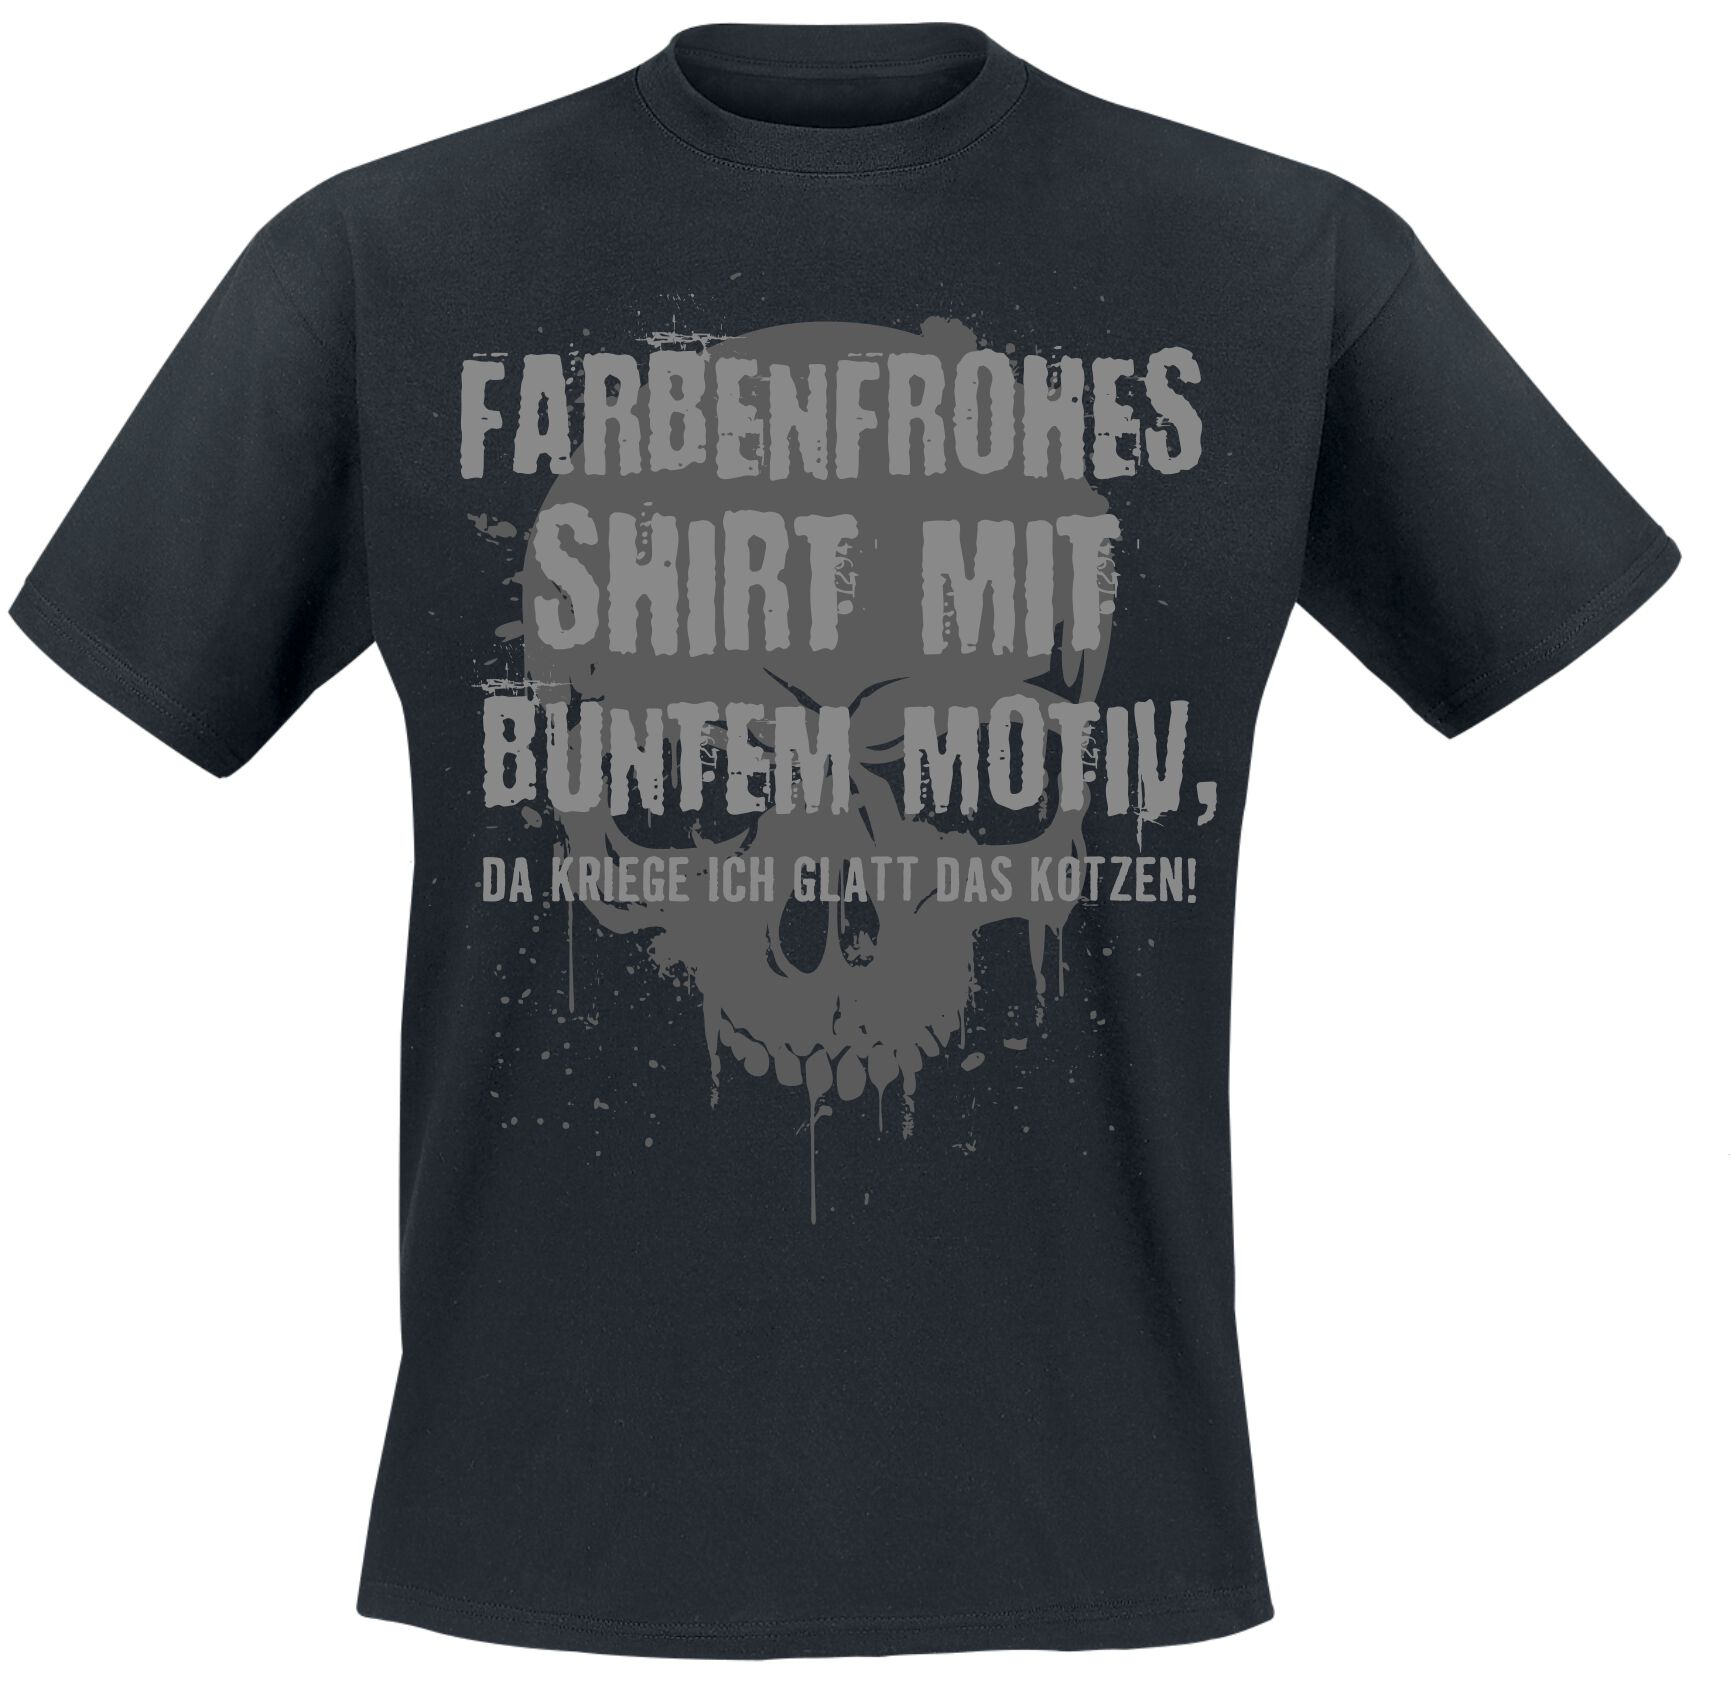 Sprüche T-Shirt - Skull - Farbenfrohes Shirt mit buntem Motiv - M bis XL - für Männer - Größe M - schwarz